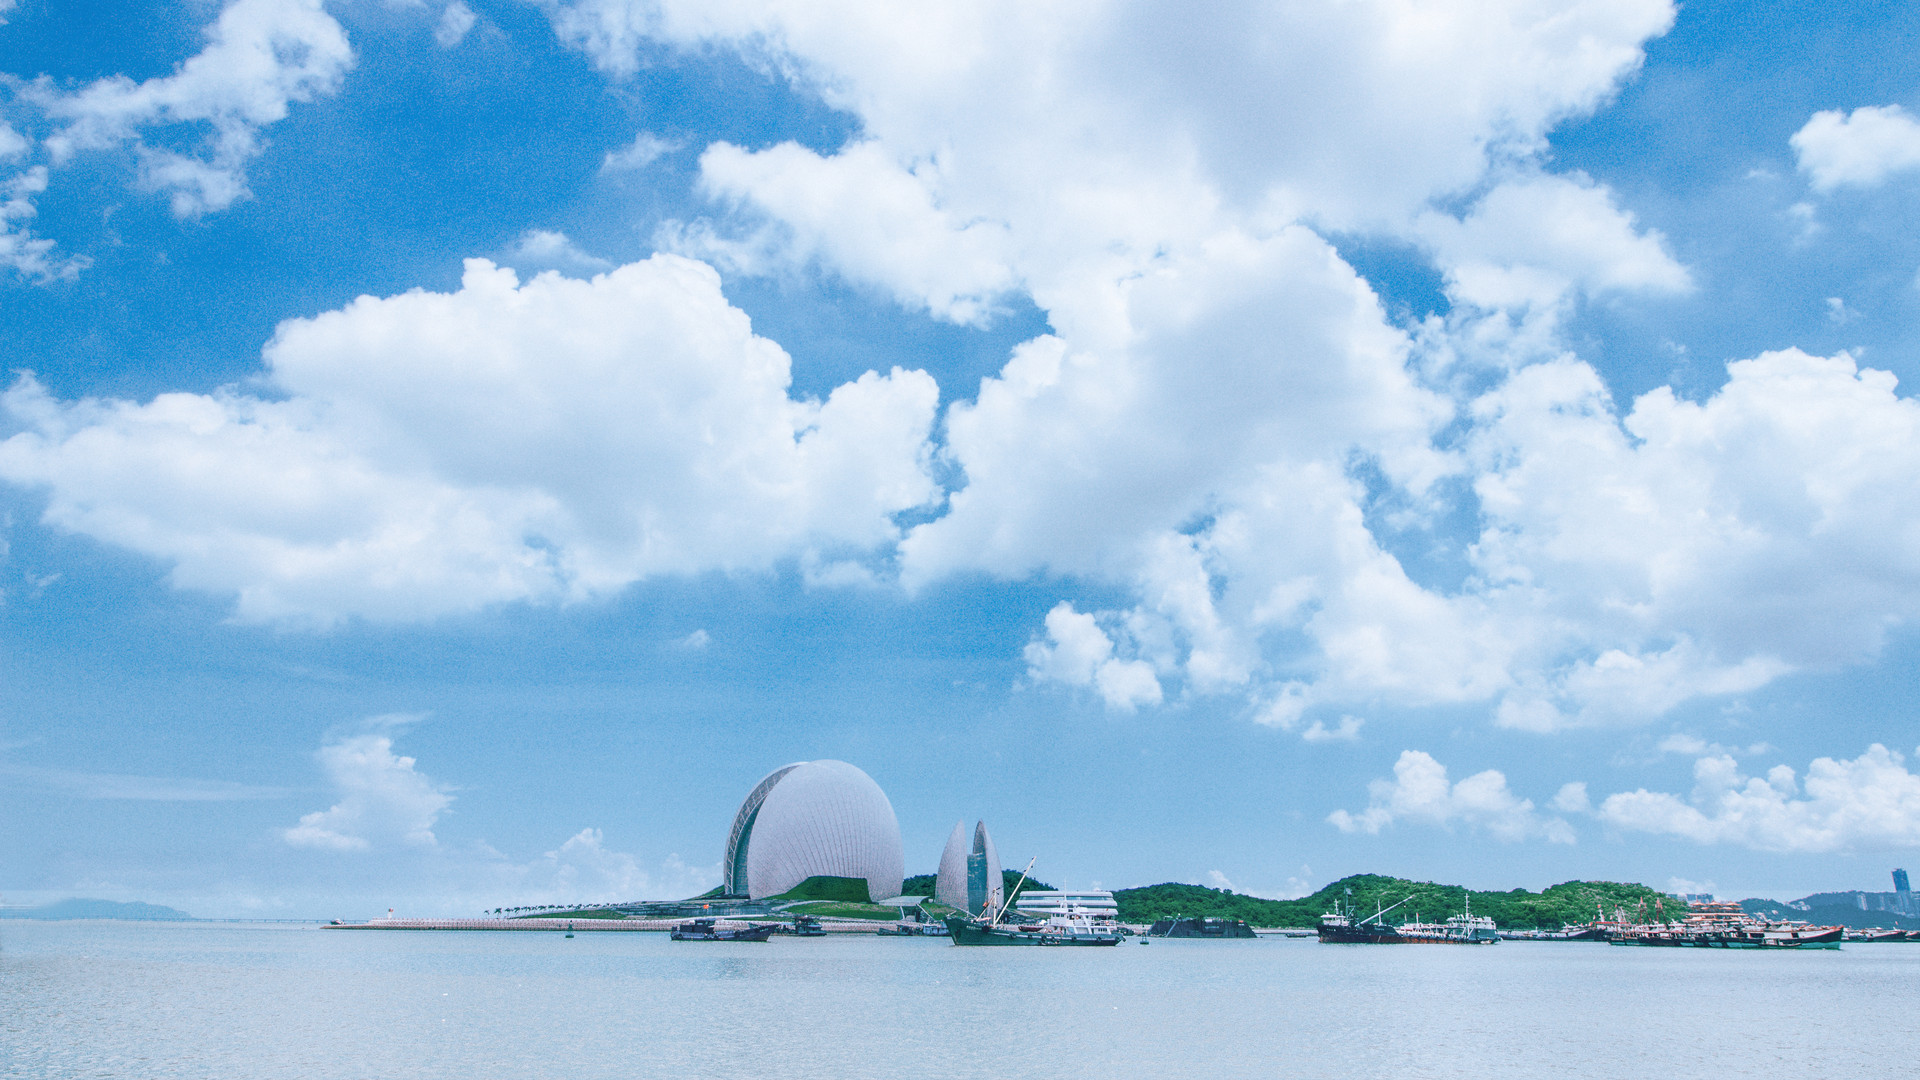 发改委印发《横琴国际休闲旅游岛建设方案》